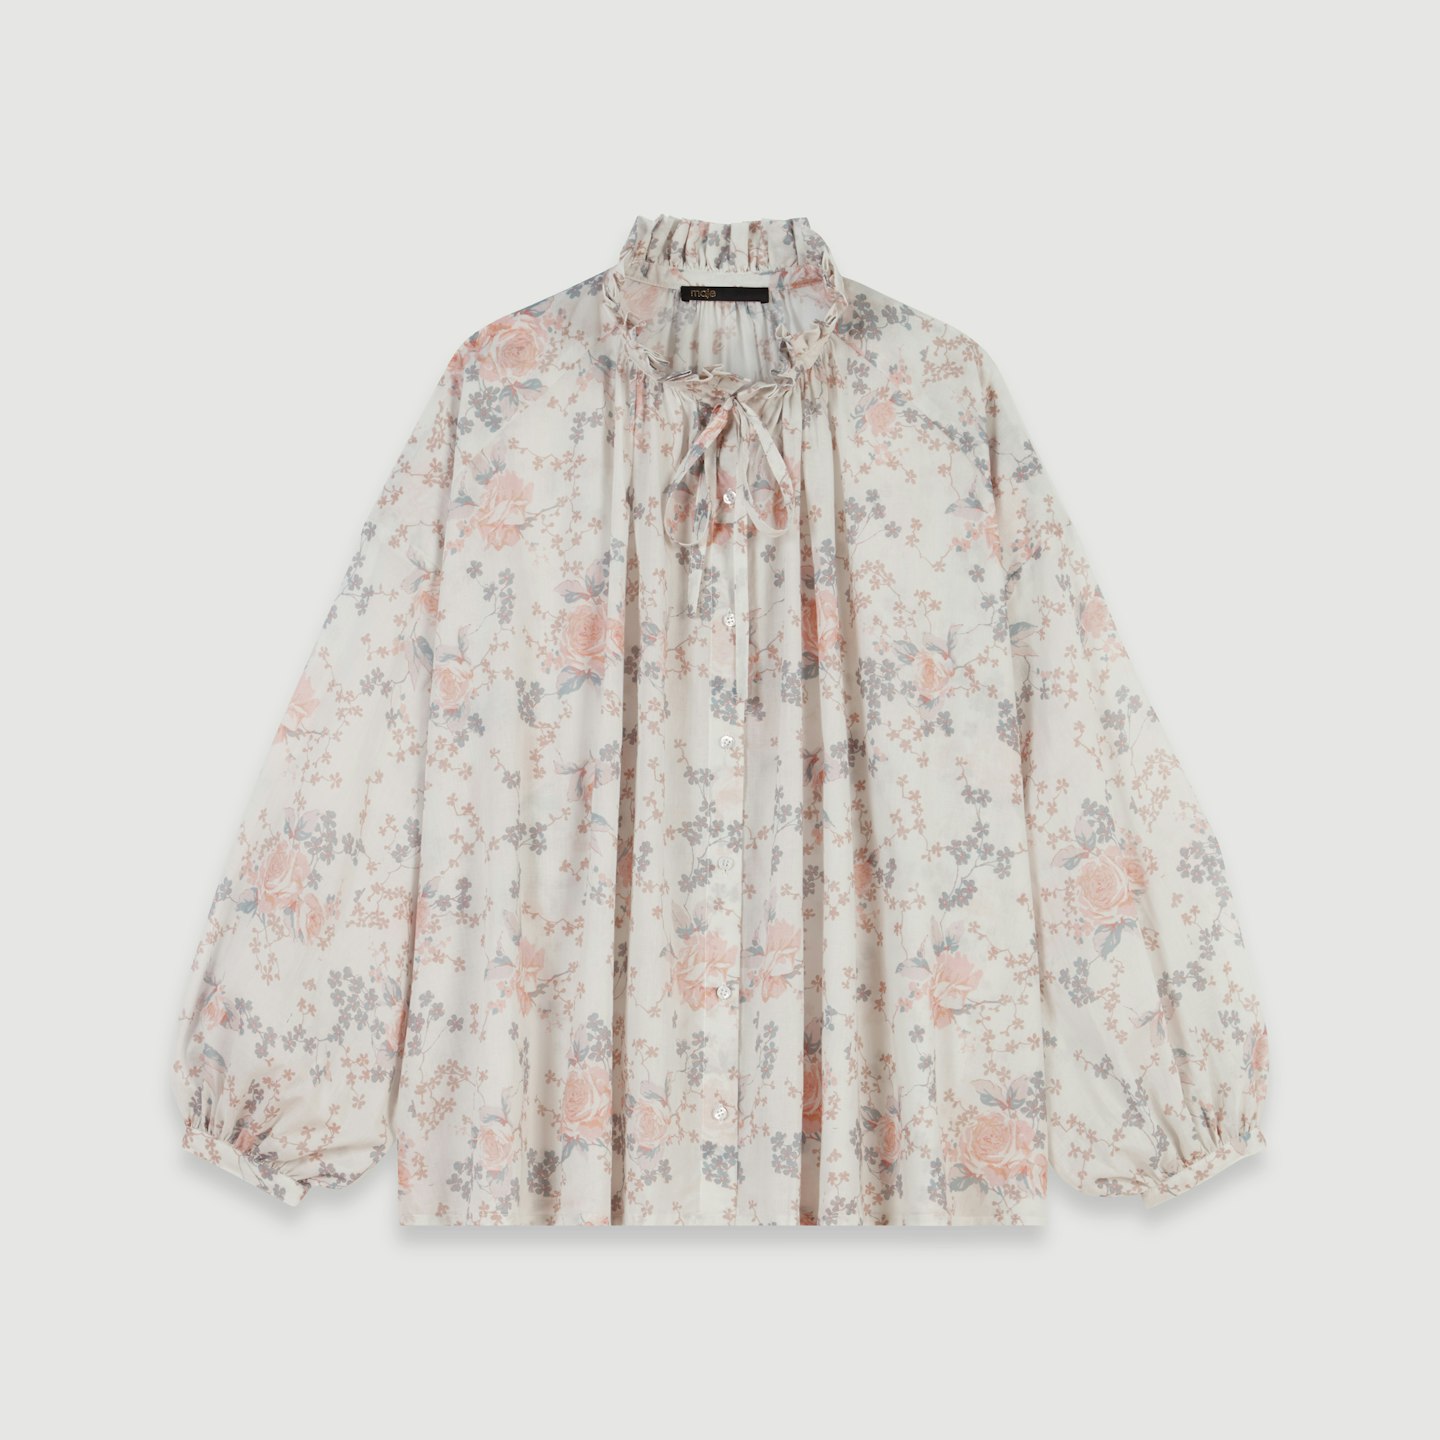 Cotton Voile Shirt, £159